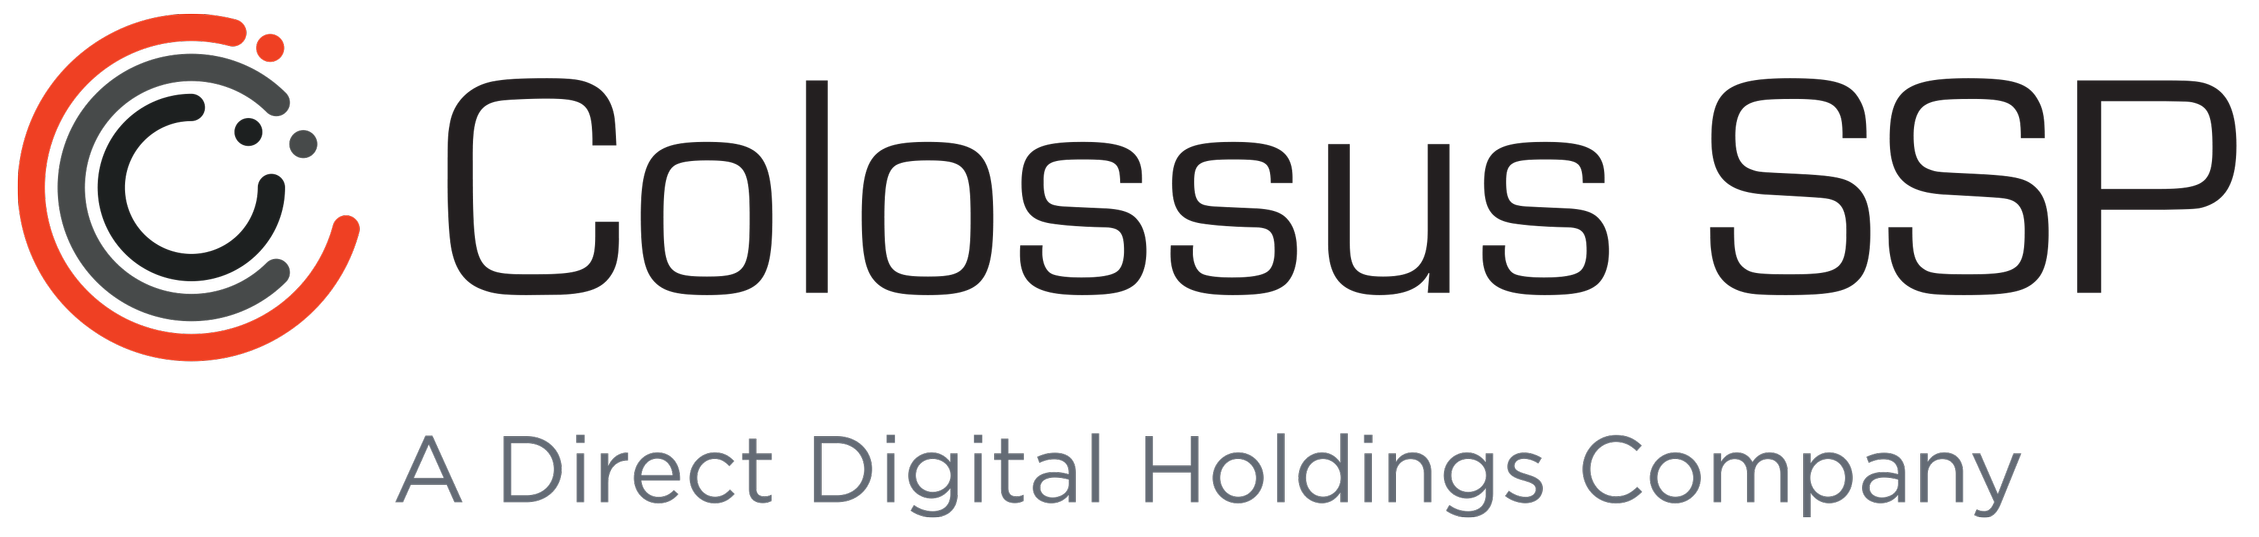 Colossus SSP logo